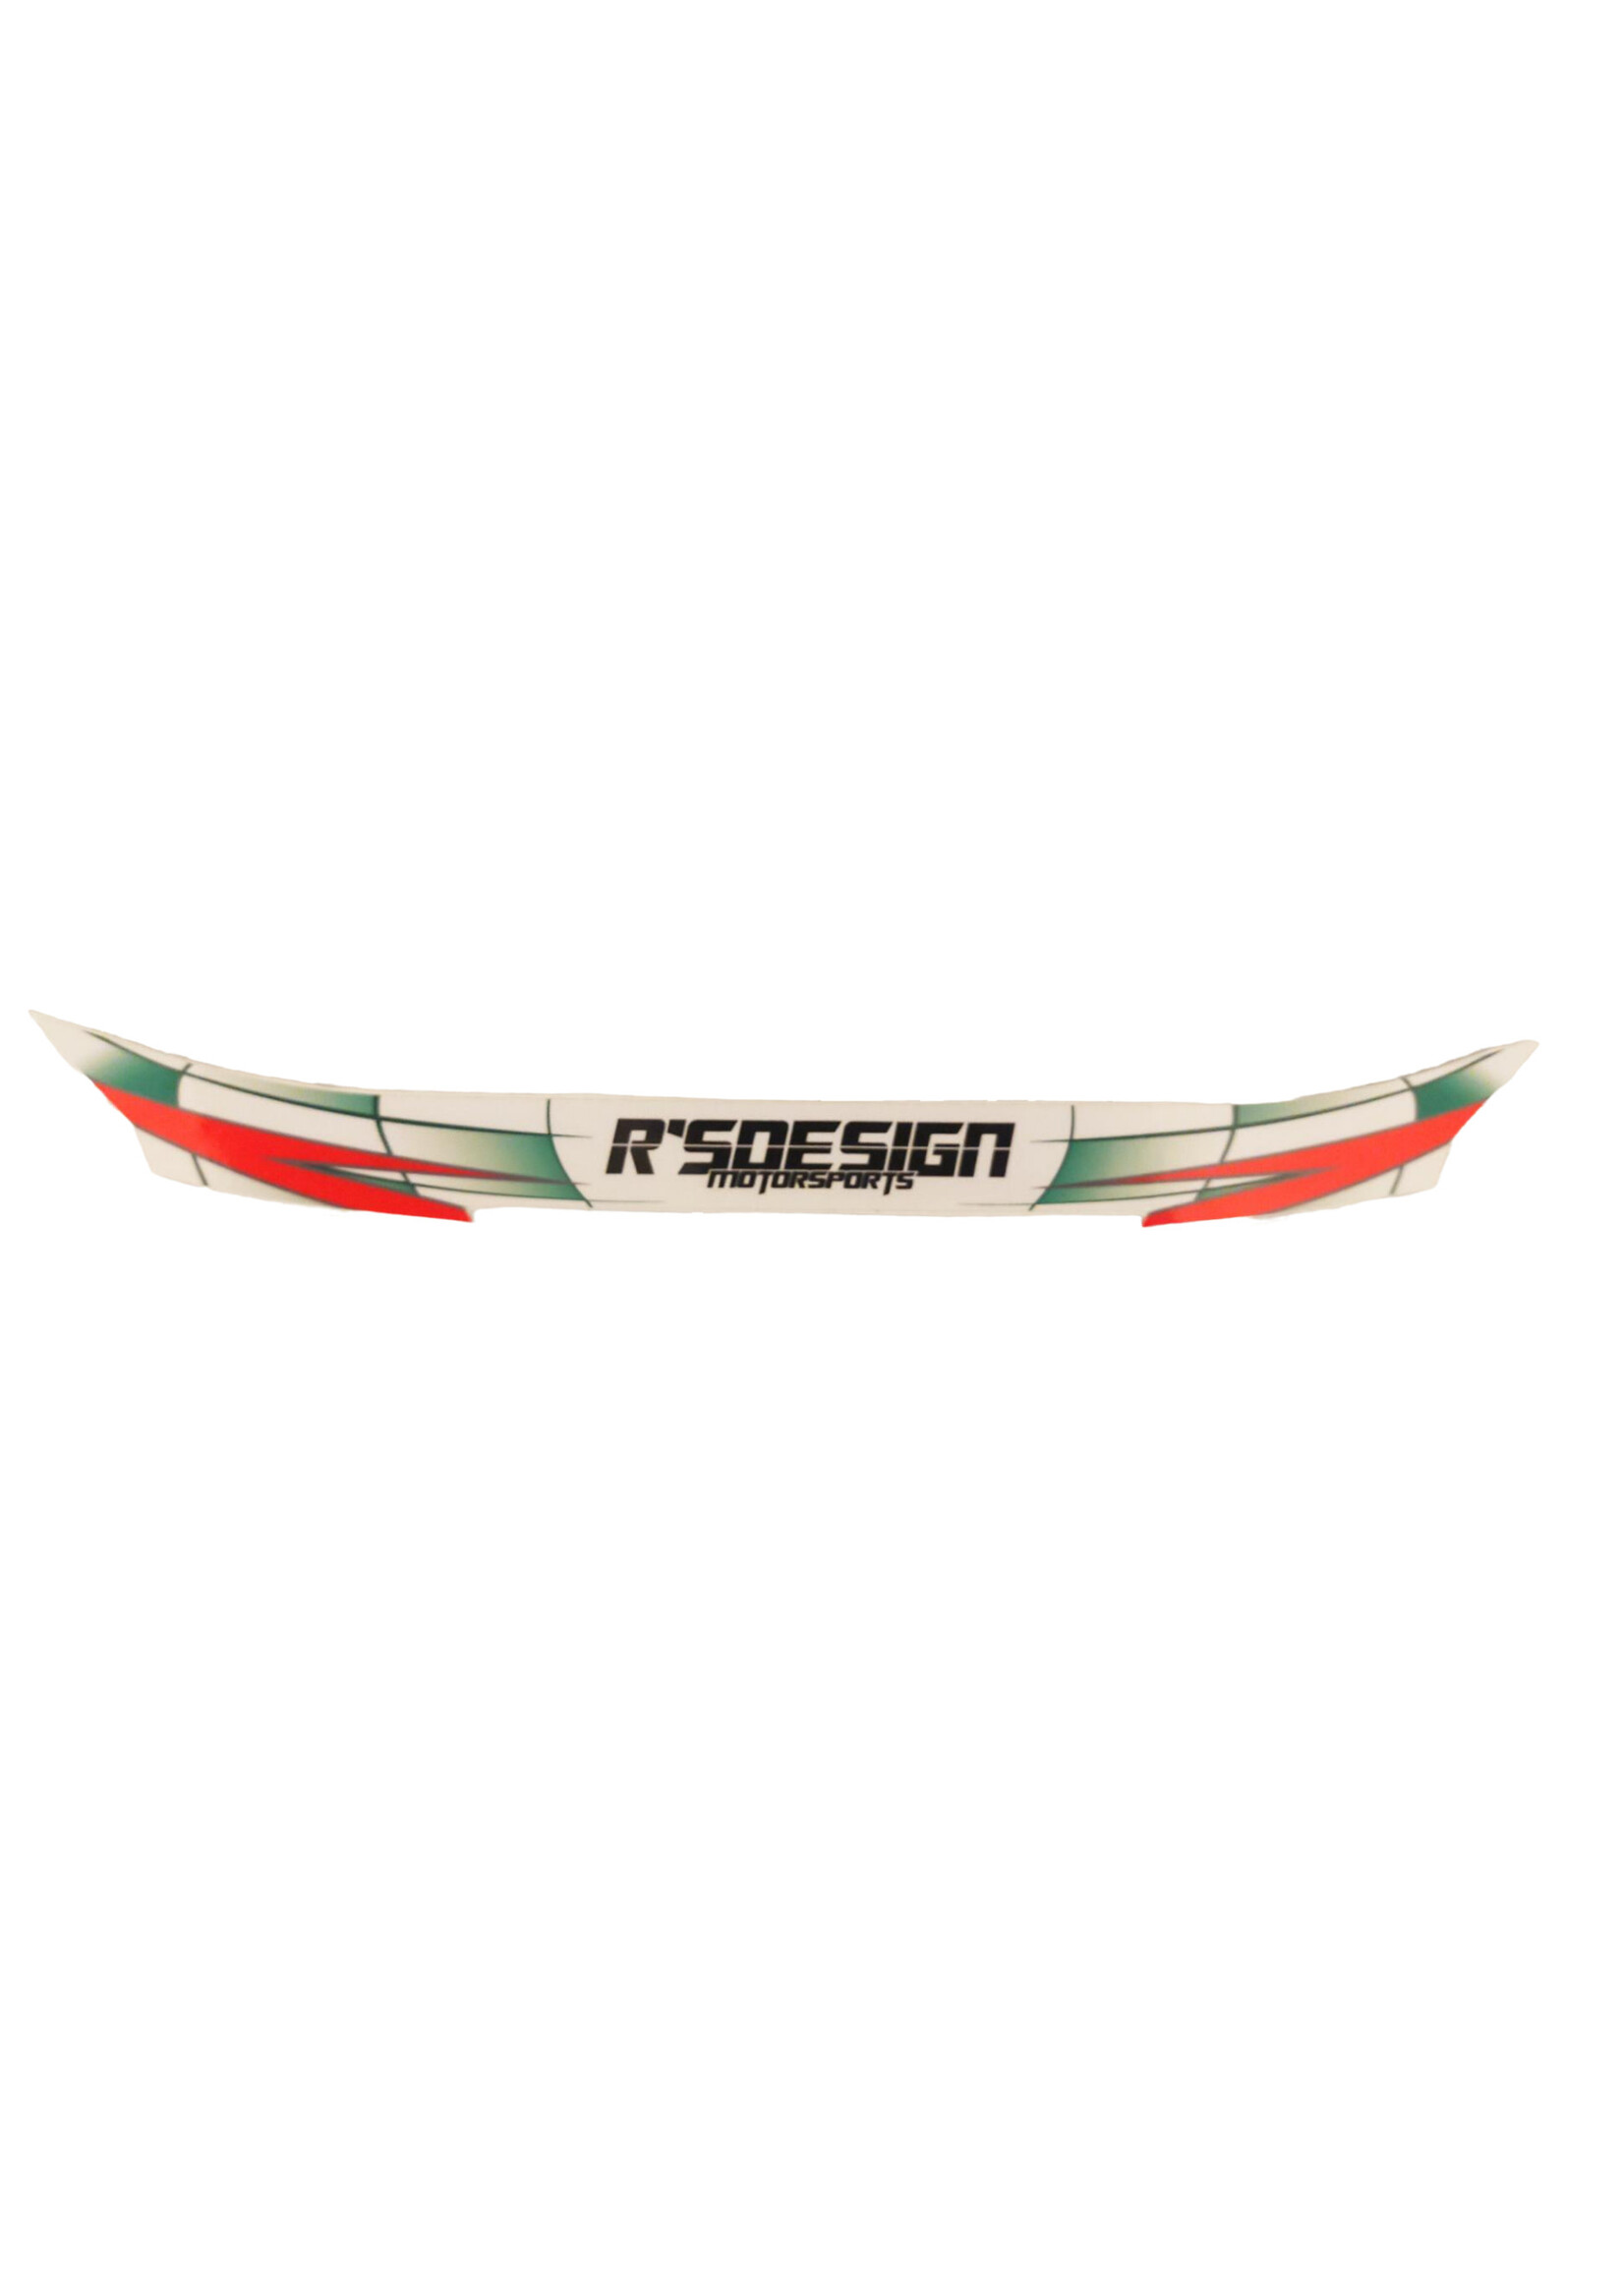 rs design visor sticker RS-Design Motorsports